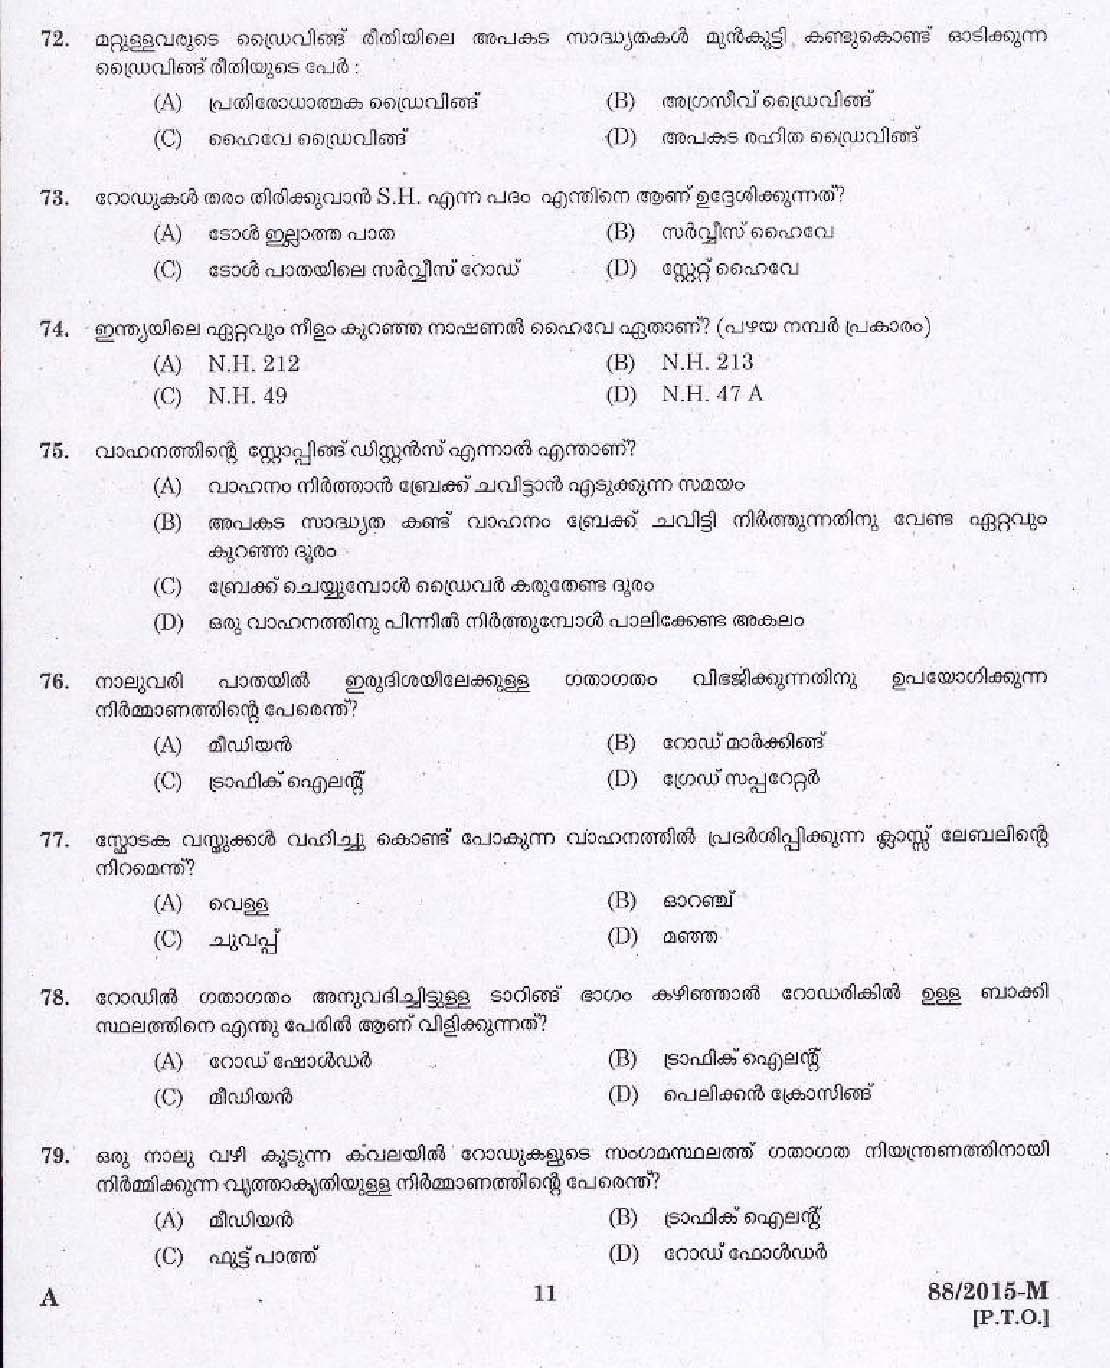 Kerala PSC Driver Grade II Exam 2015 Question Paper Code 882015 M 9